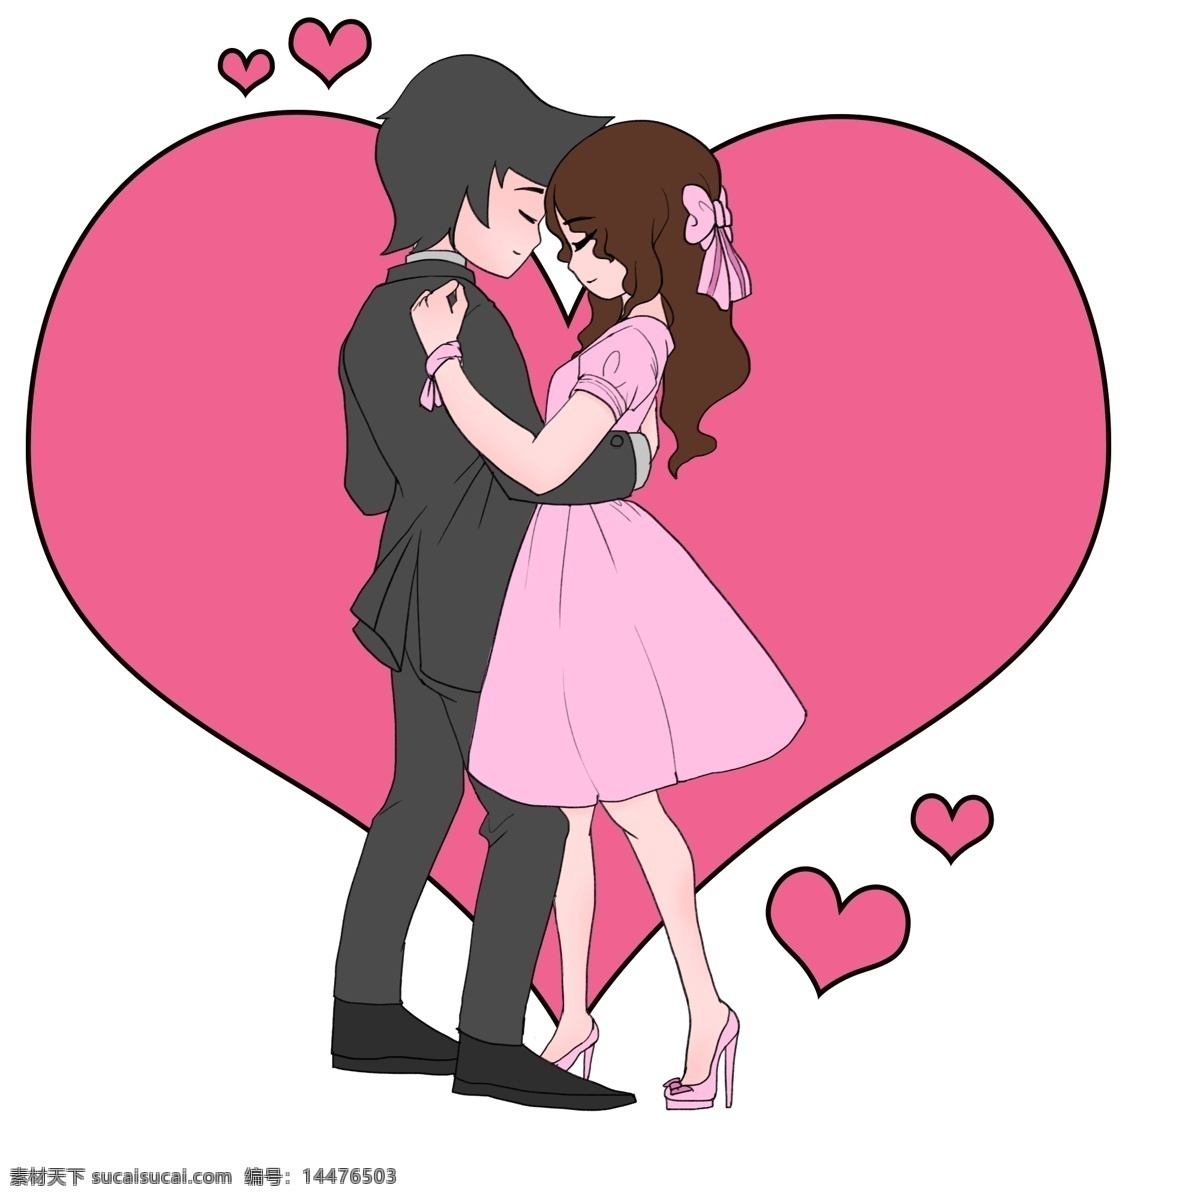 520 情人节 拥抱 情侣 女性 节日 粉红 浪漫 手绘 贴纸 爱情 婚姻 卡通 友谊 异性 温柔 初恋